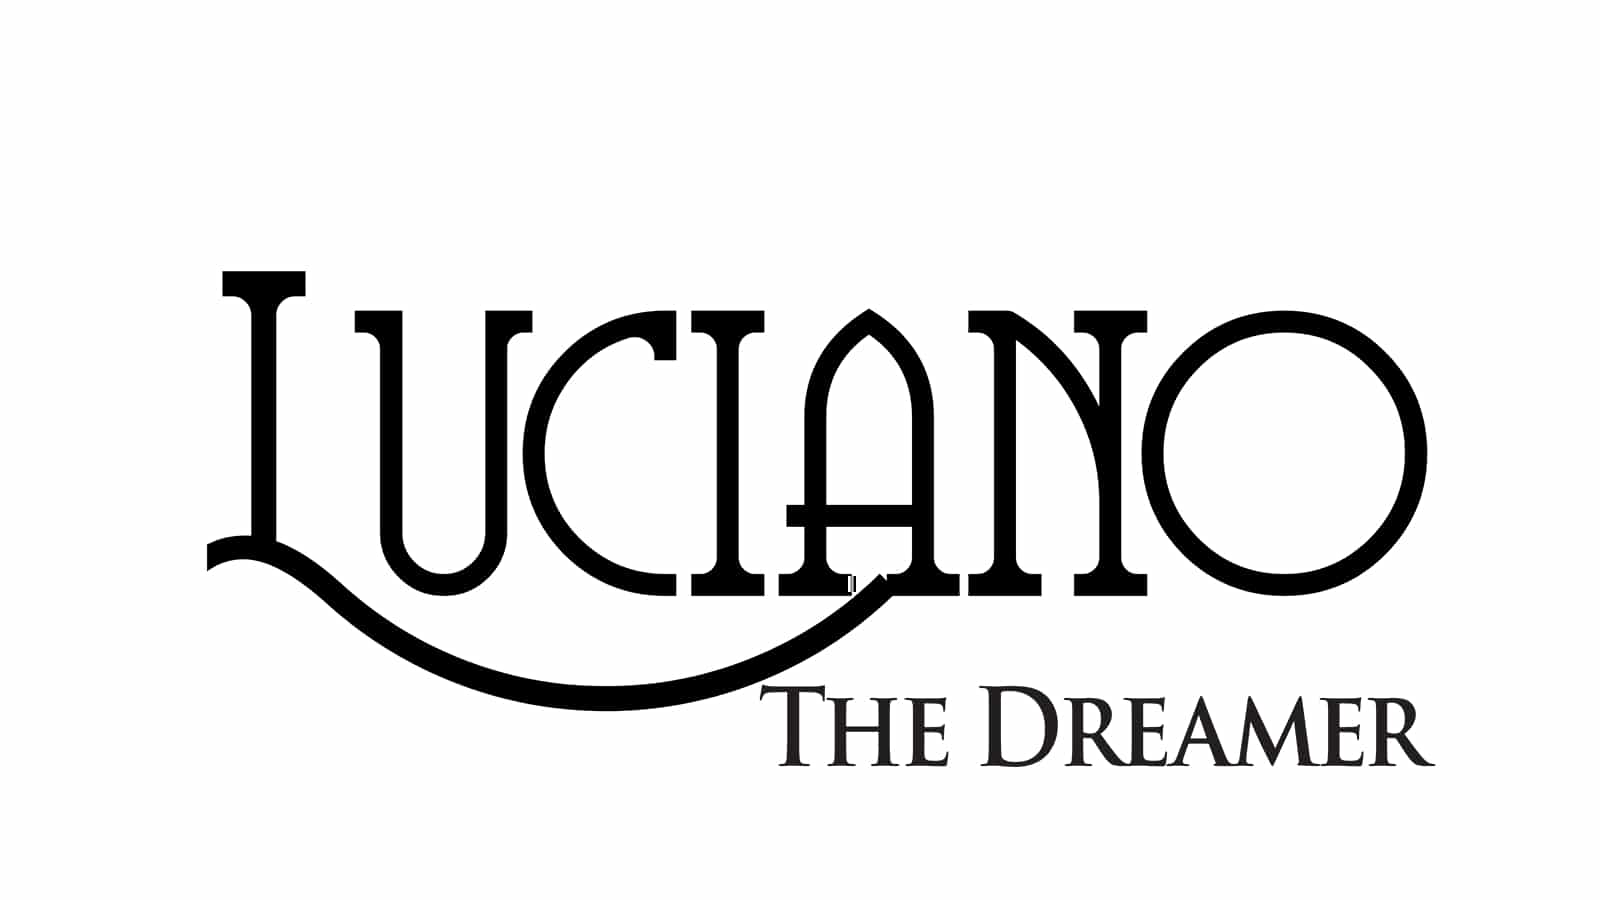 Luciano the Dreamer